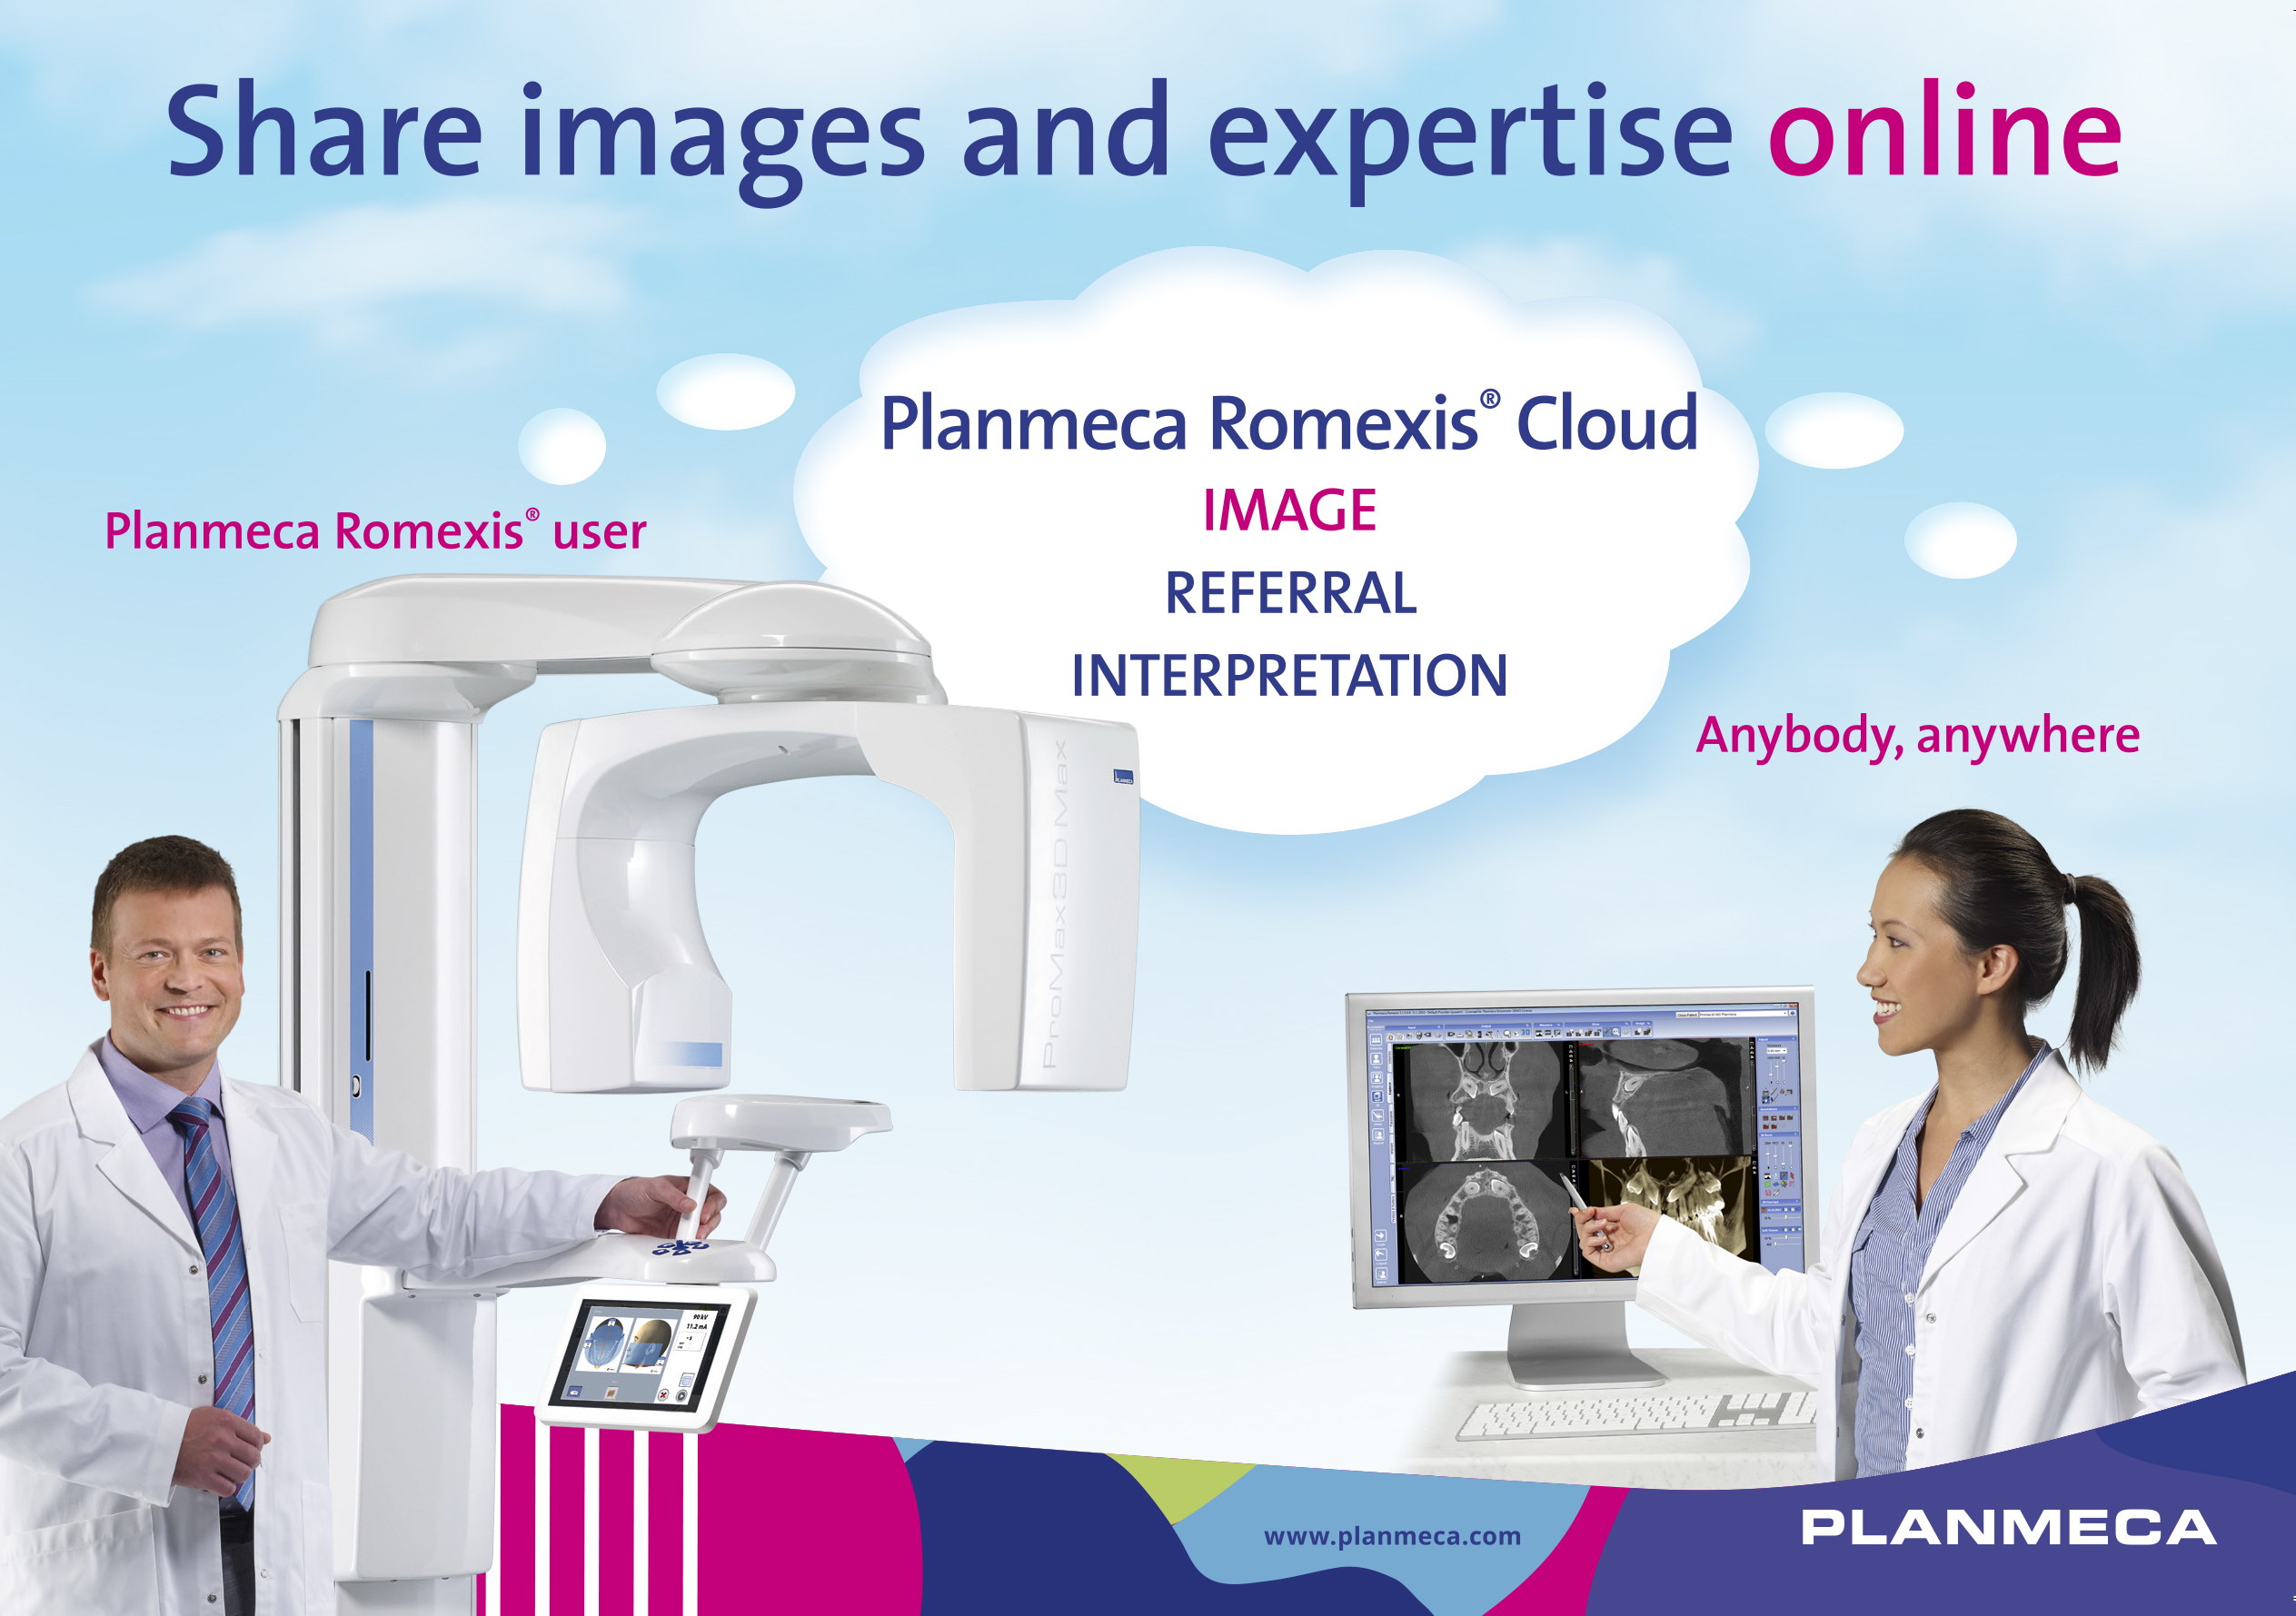 Le nouveau service Planmeca Romexis® Cloud permet un transfert facile des images d'un professionnel à l'autre